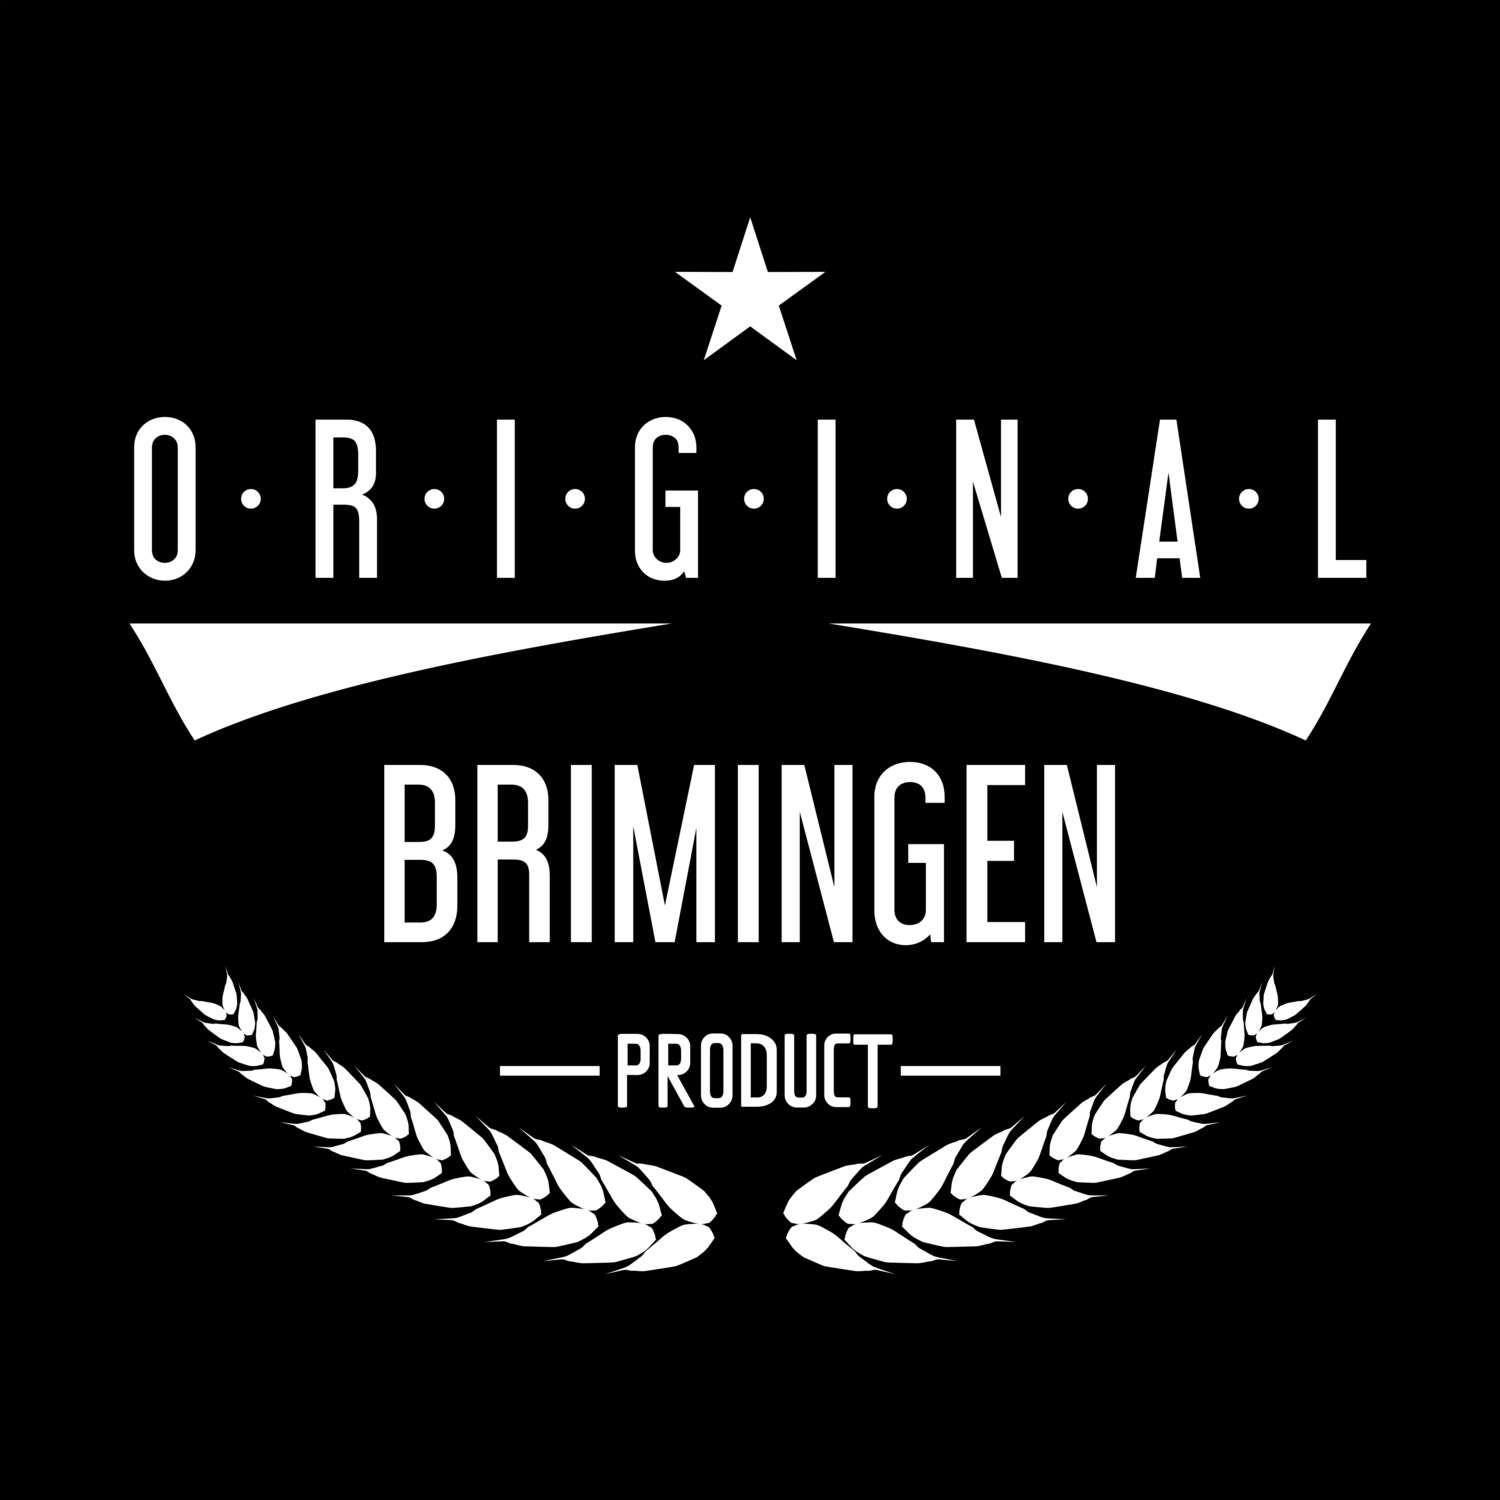 Brimingen T-Shirt »Original Product«